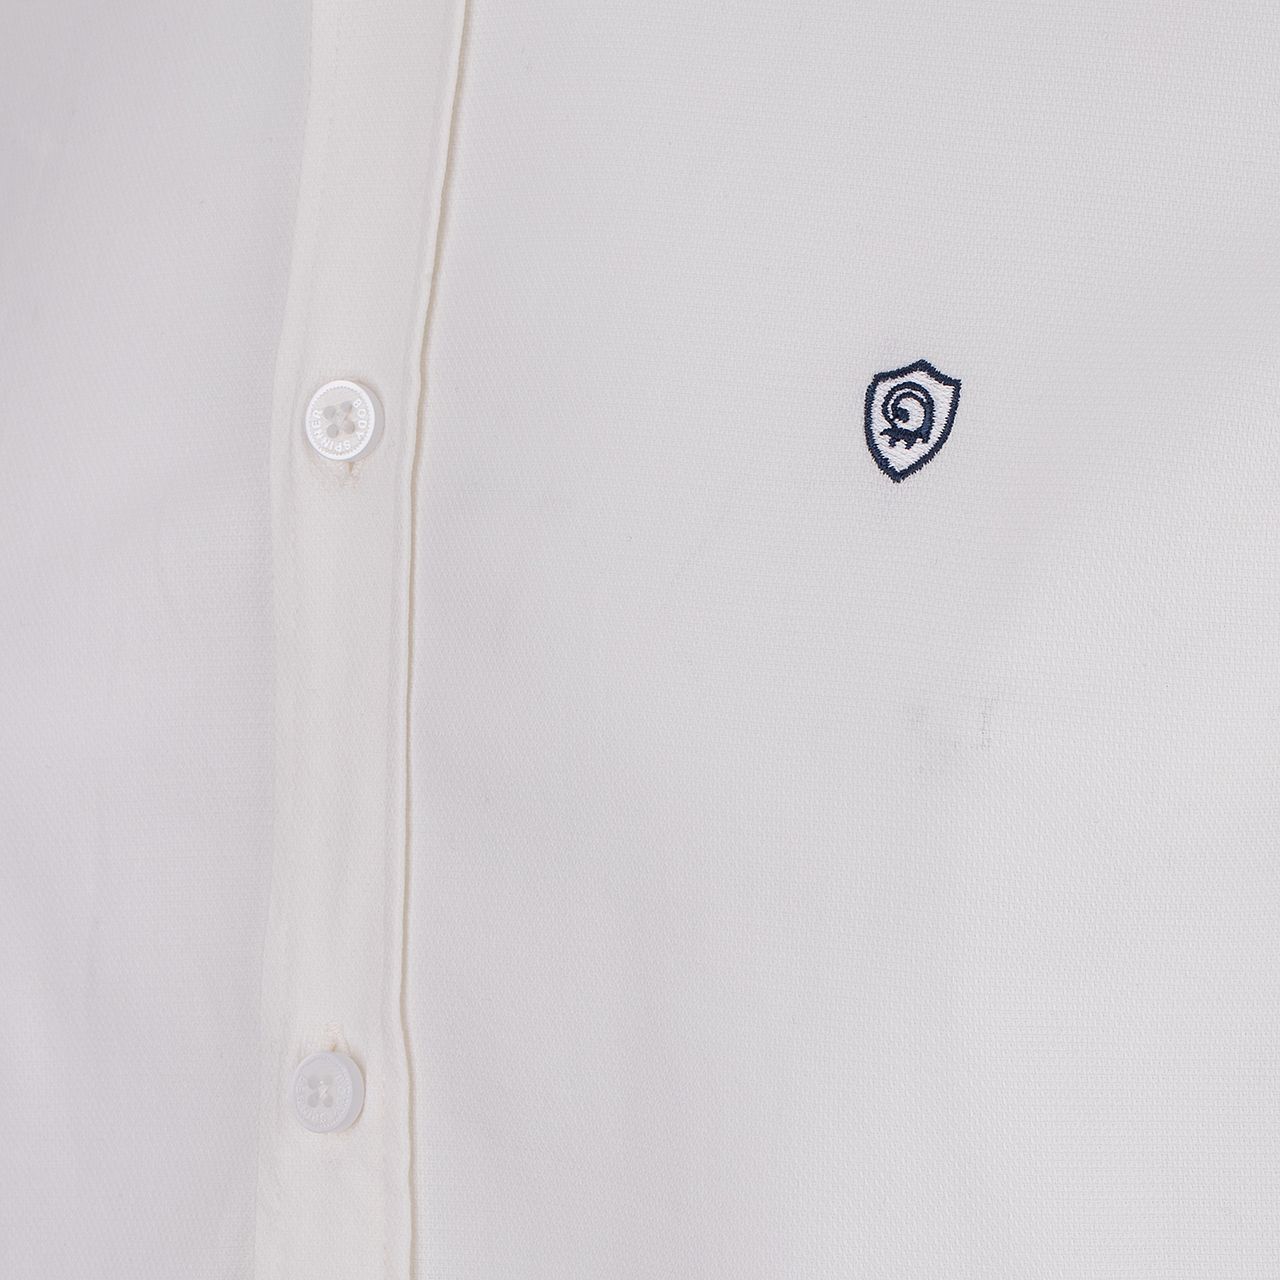 پیراهن آستین بلند مردانه بادی اسپینر مدل 1255 کد 1 رنگ سفید -  - 4